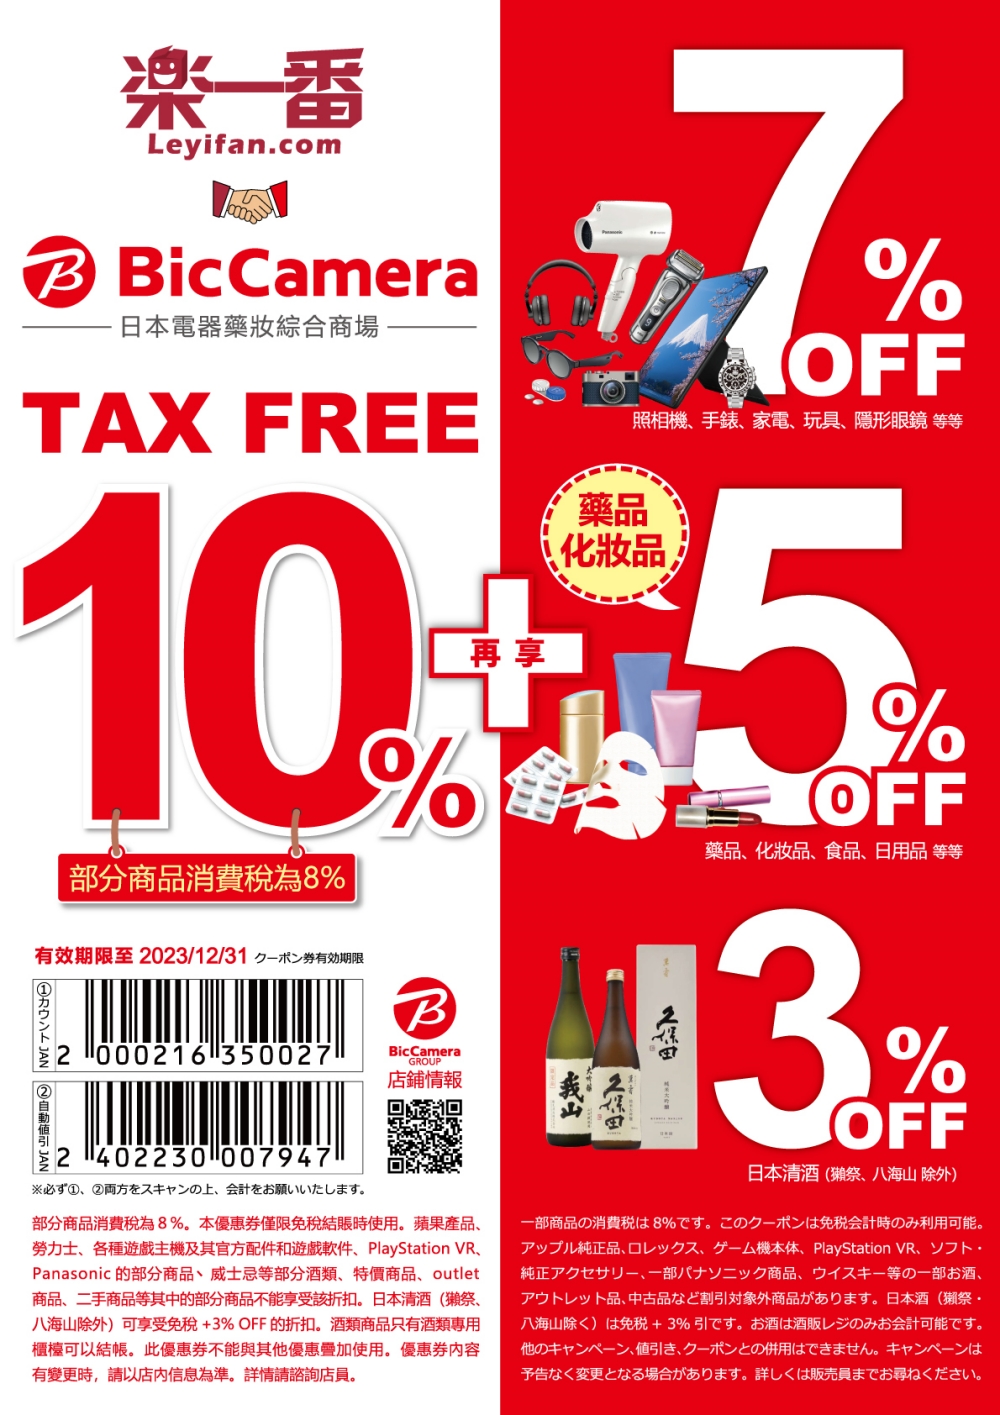 bic camera折價券日本買電器去哪家電器行買最划算